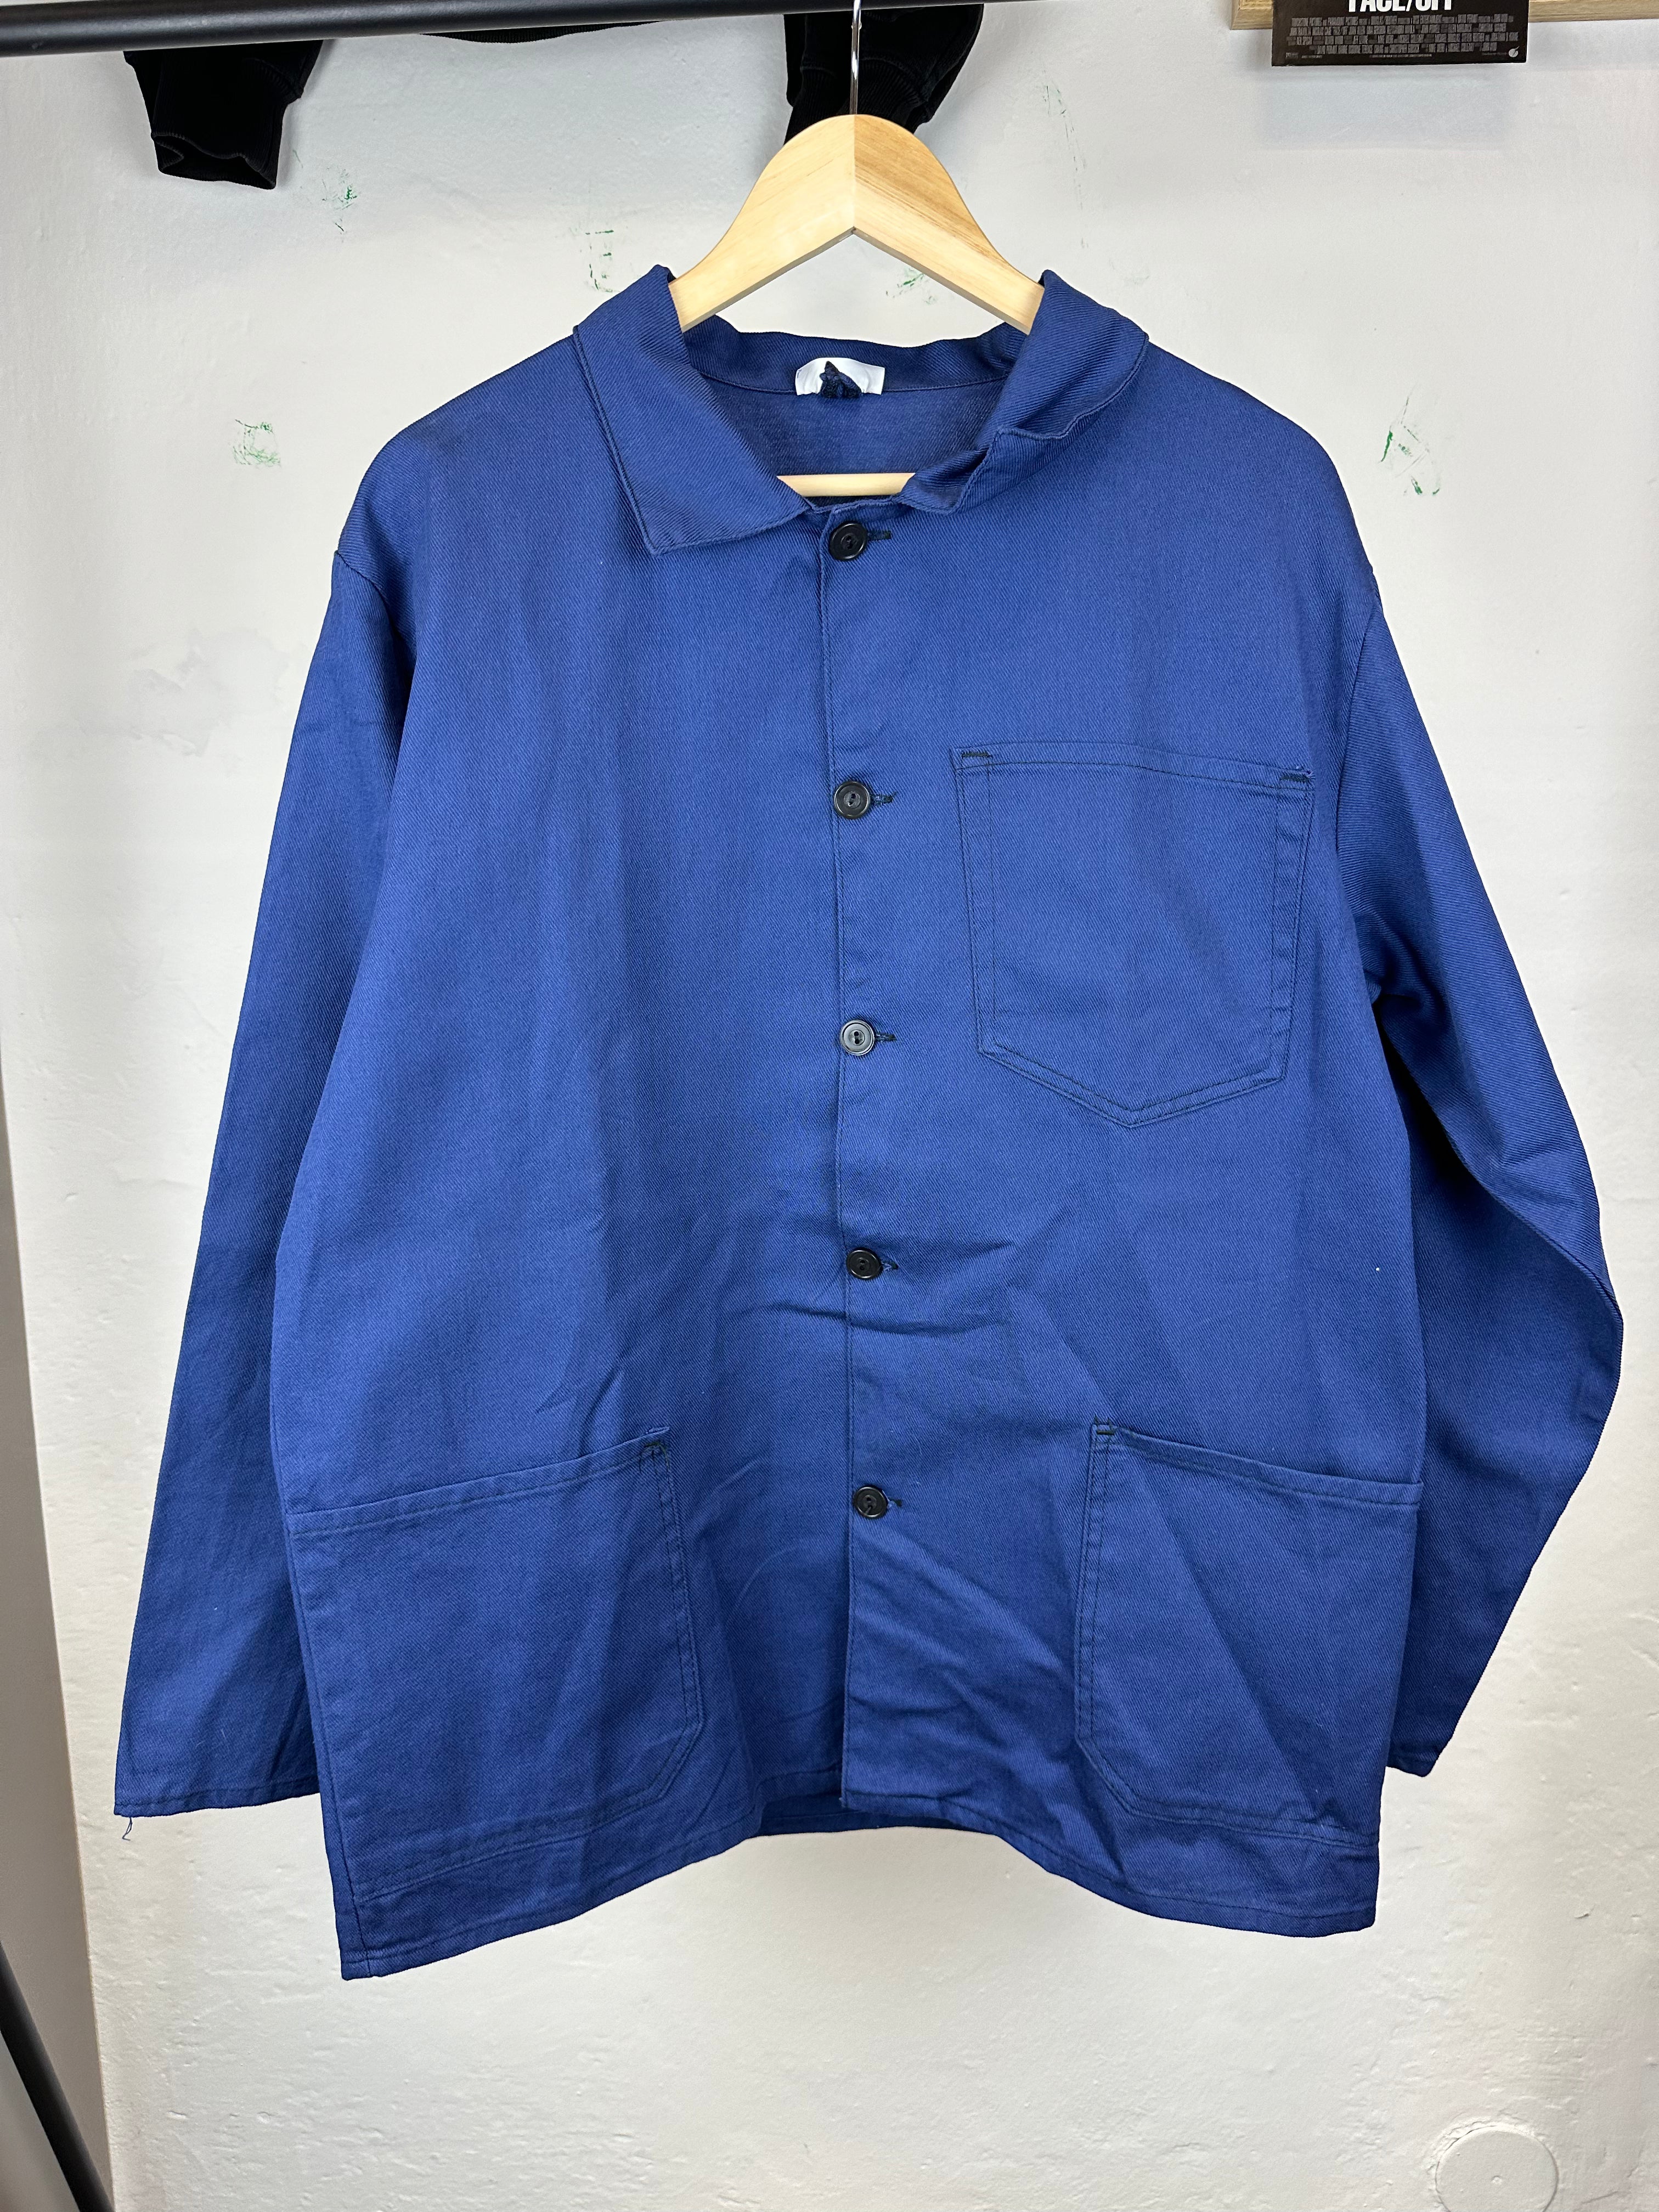 Vintage 1990s French Chore Workwear Jacket (Germany)